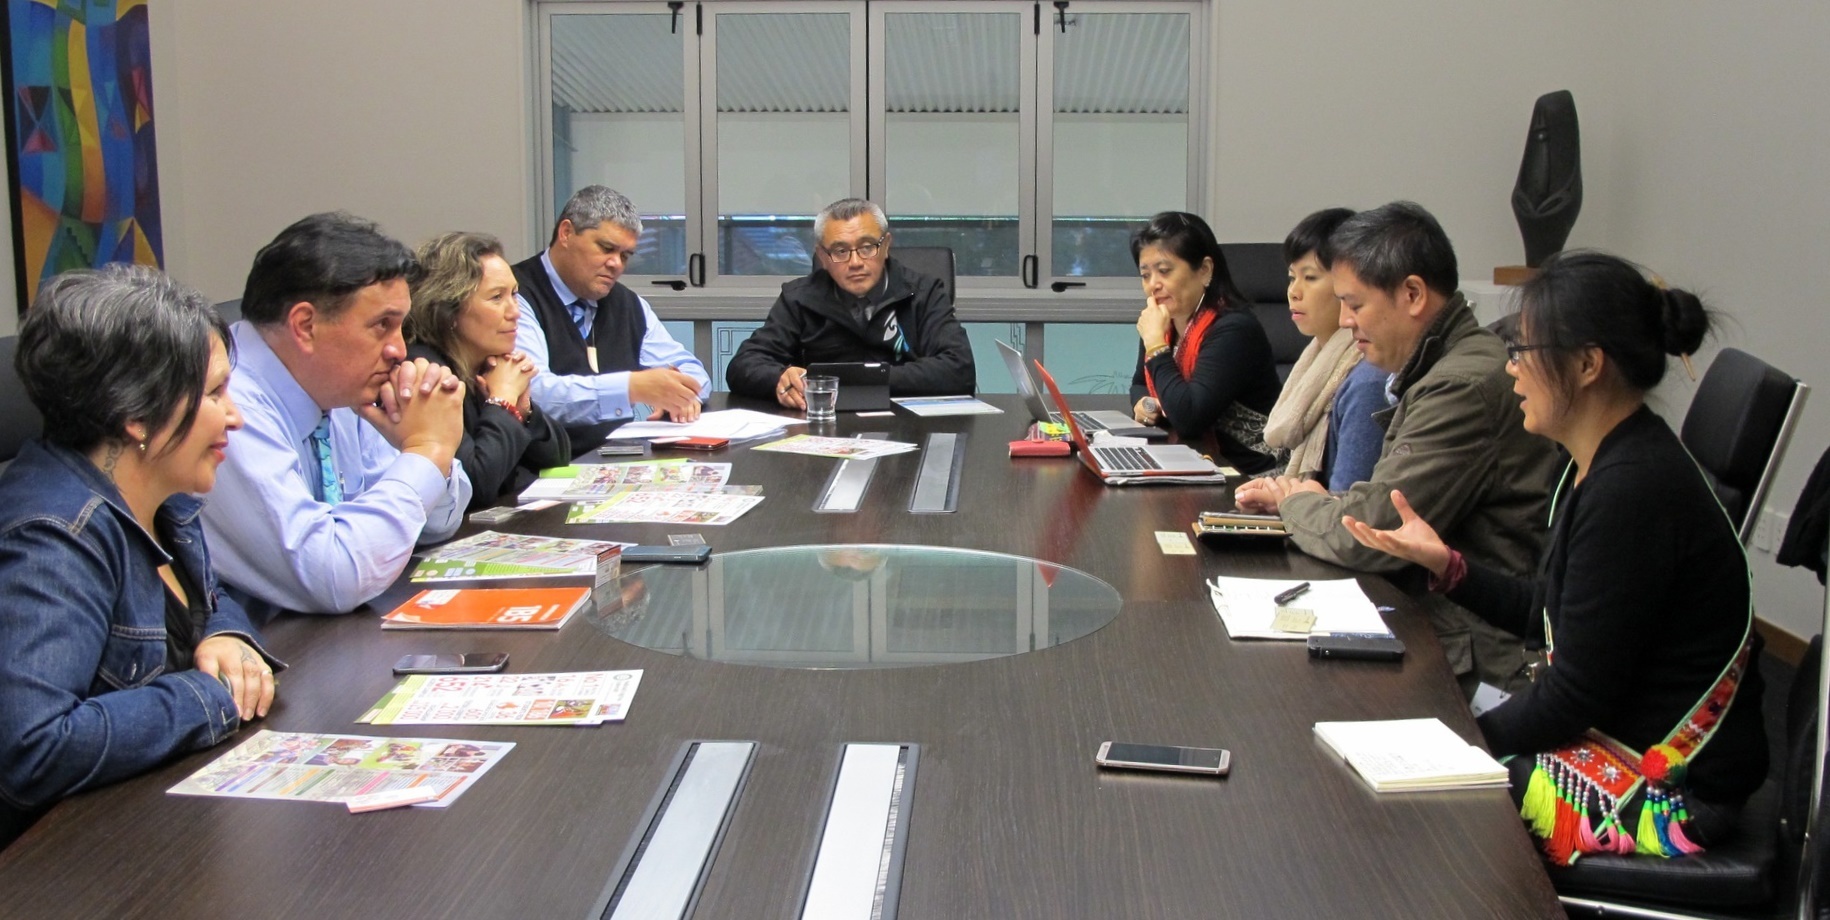 執行長Dr. Jim Mather率領資深領導團隊與台灣團隊進行深入的教育體制運作情形的對談。